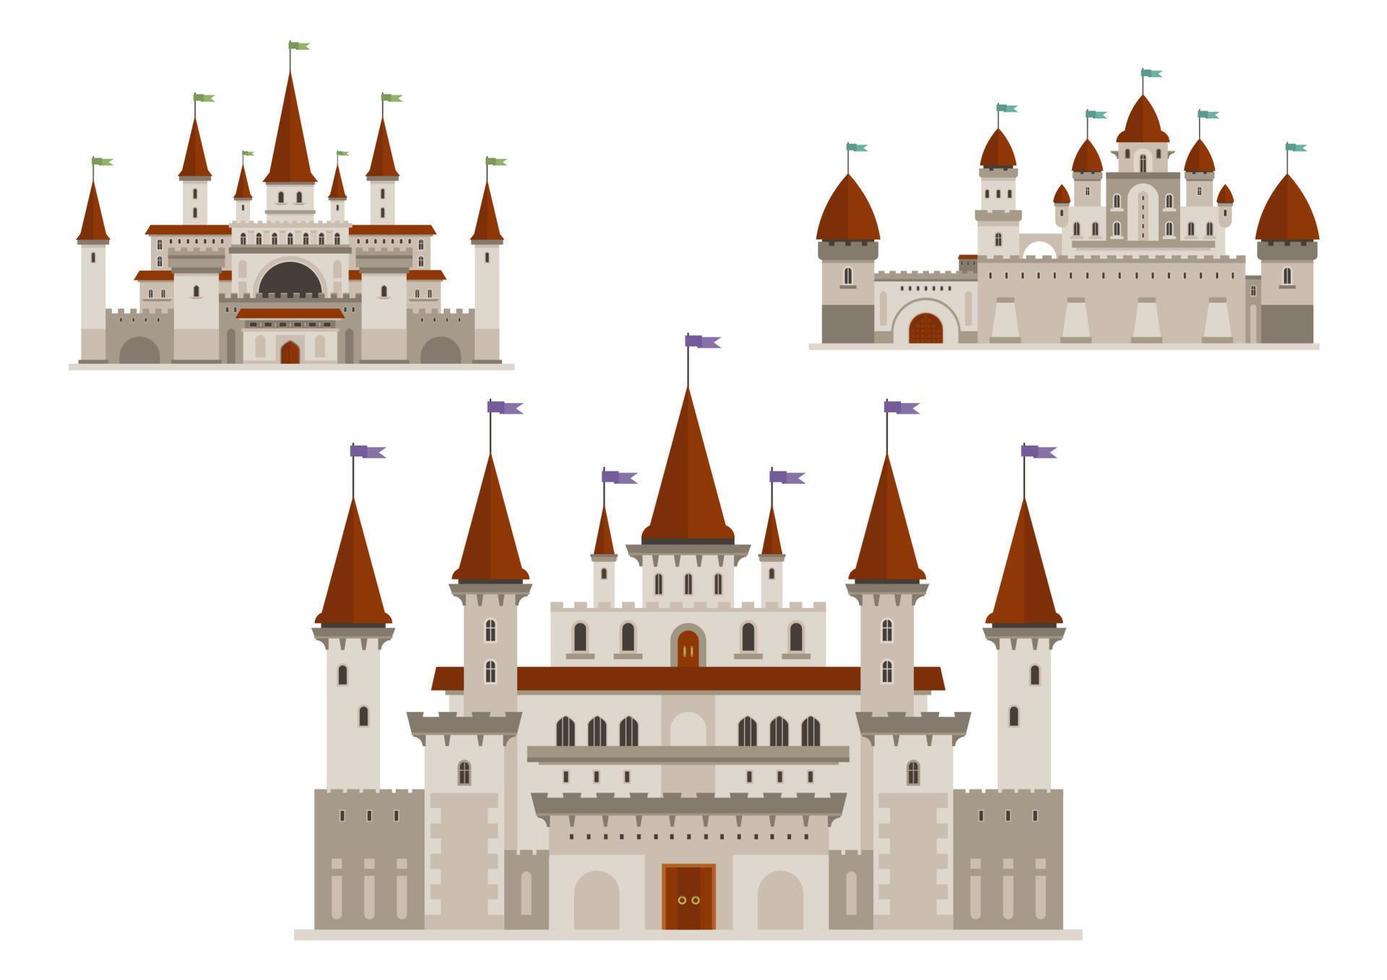 middeleeuws paleizen of kastelen met torens en torenspitsen vector